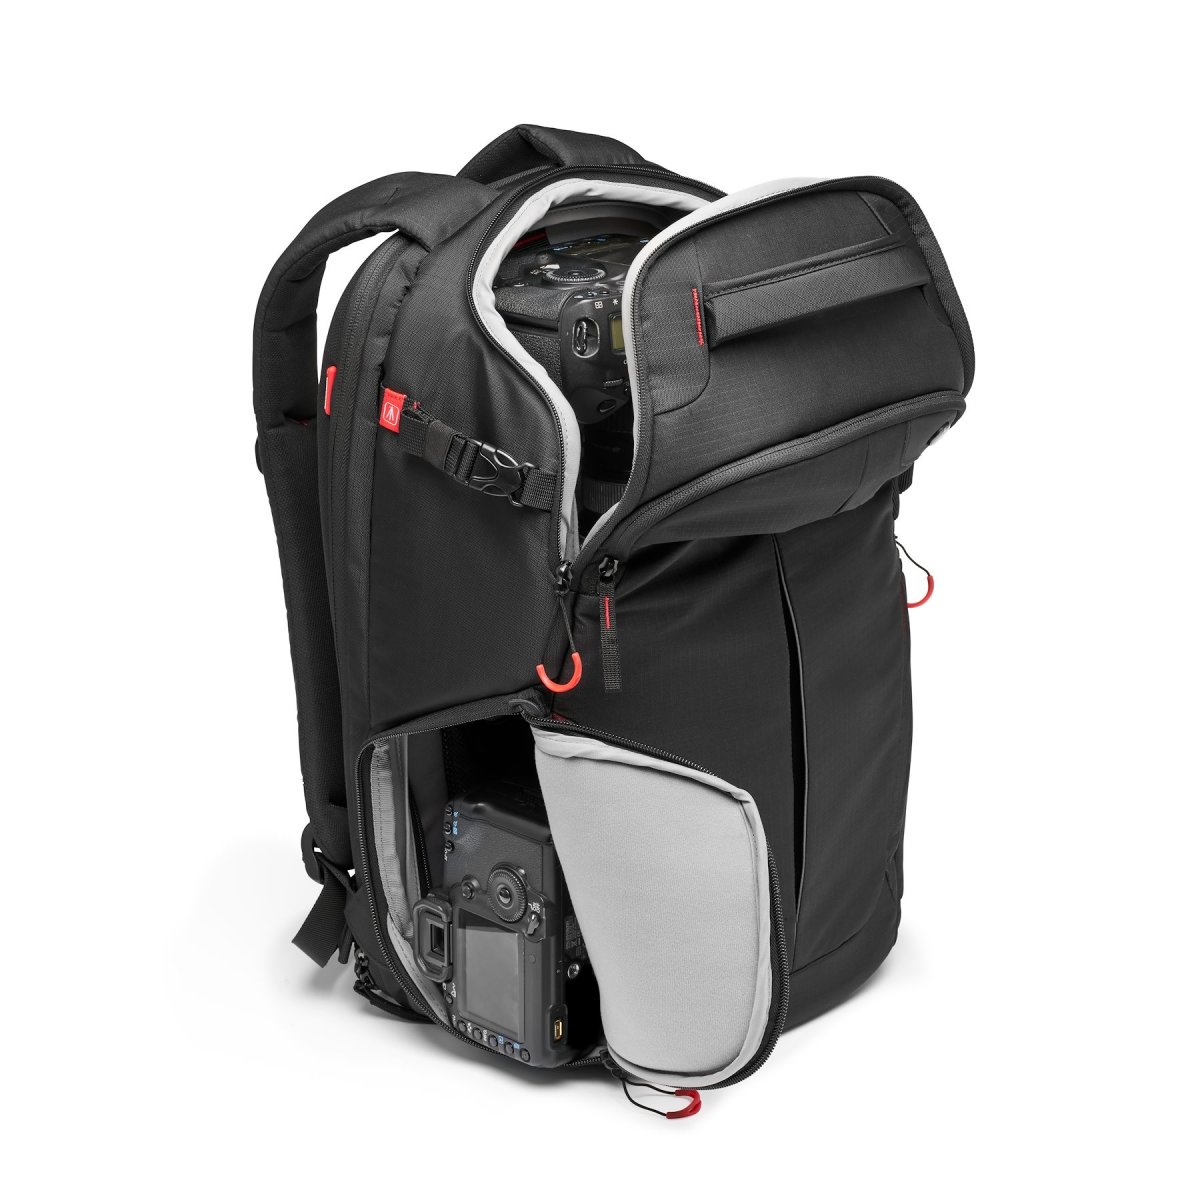 Fotobatoh Manfrotto Pro Light backpack RedBee-310 pro DSLRc nebo dron DJI Mavic series boční kapsy